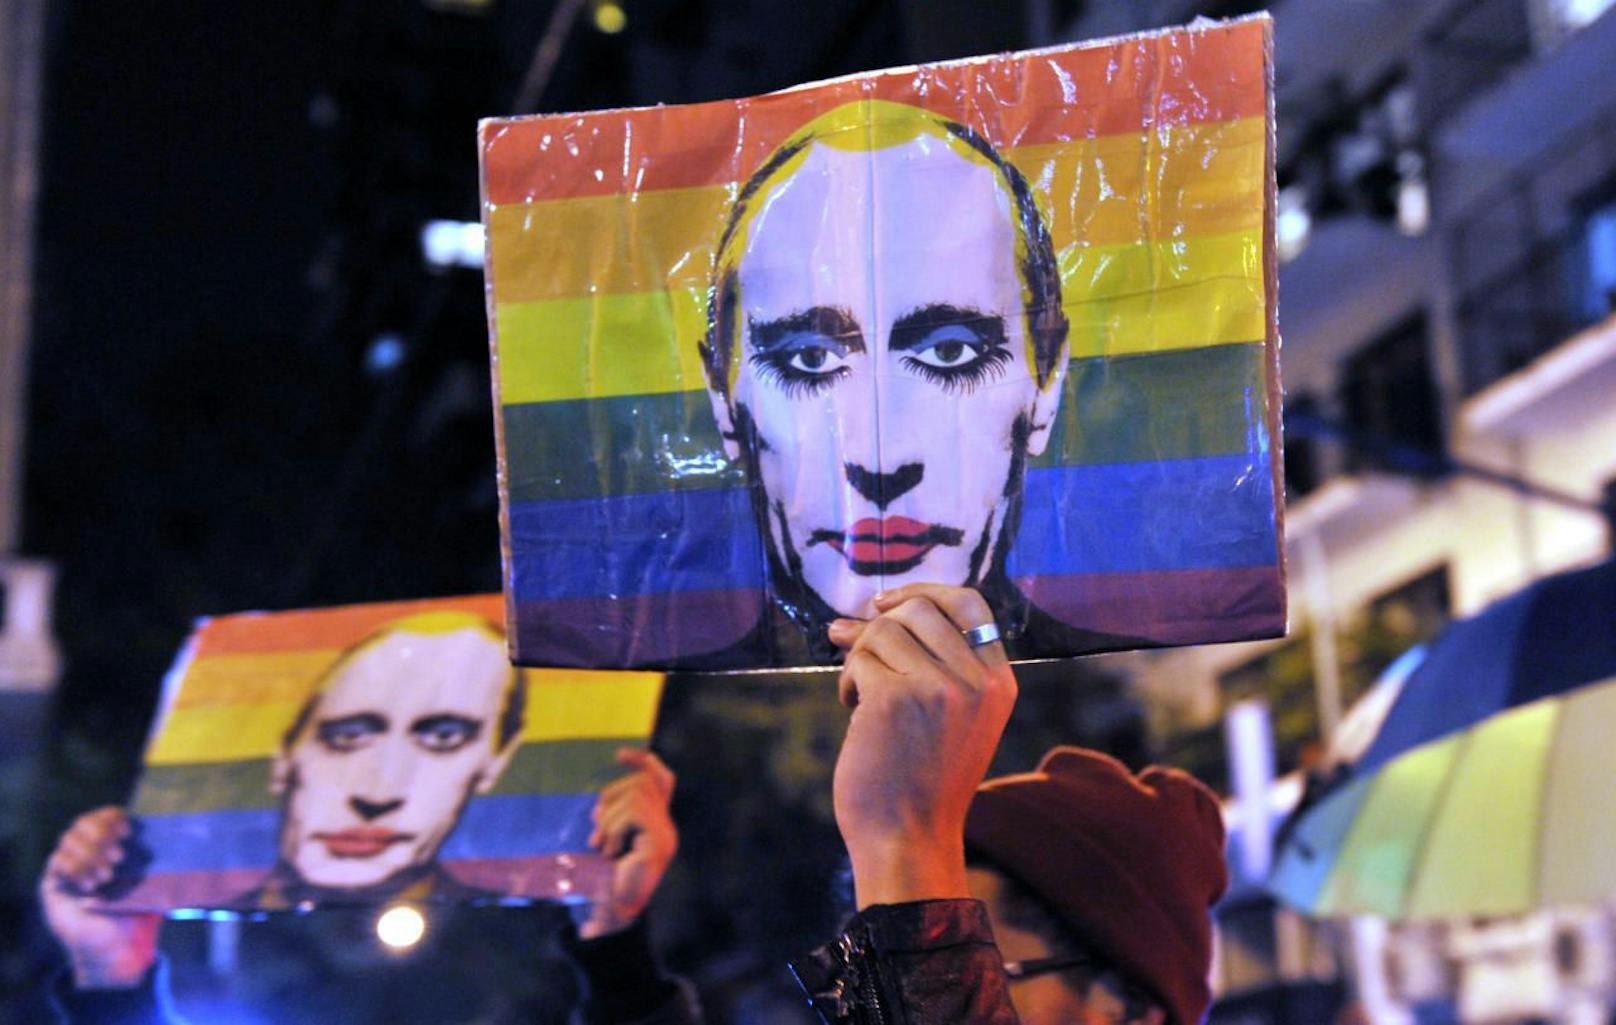 Putin als schwuler Clown: Ist es dieses Bild, das ab sofort in Russland verboten ist?